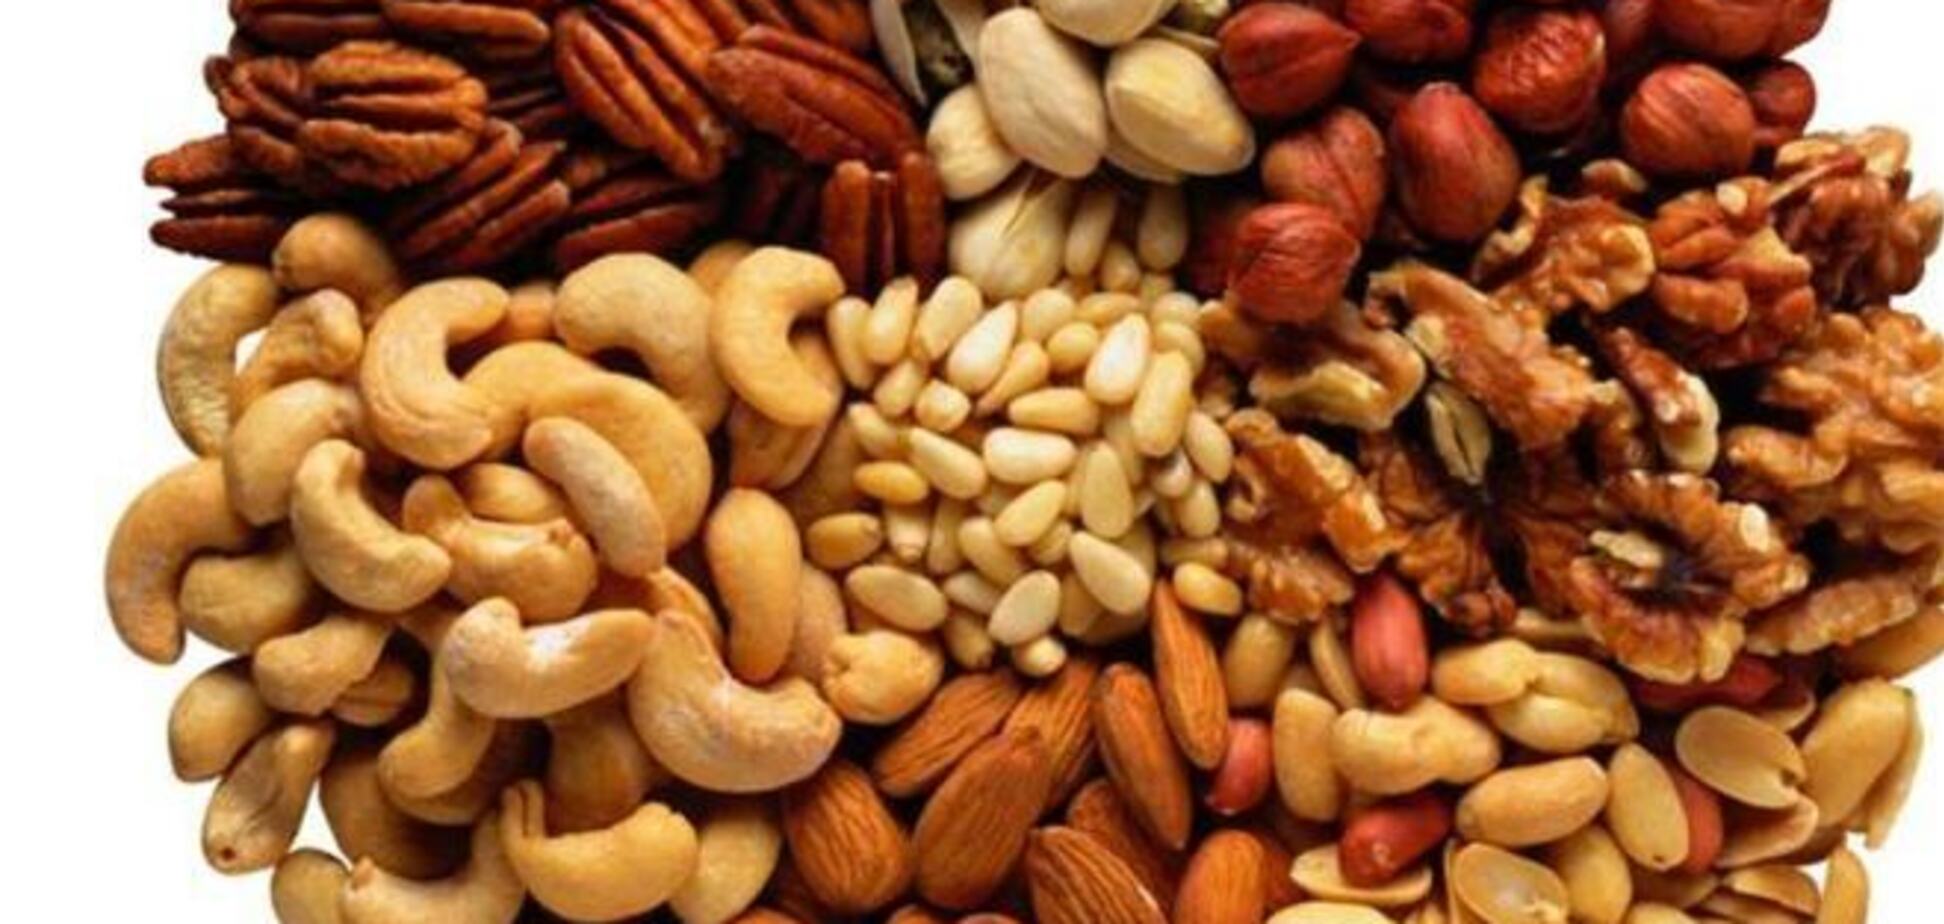 Орехи значительно снижают риск развития рака и ожирения